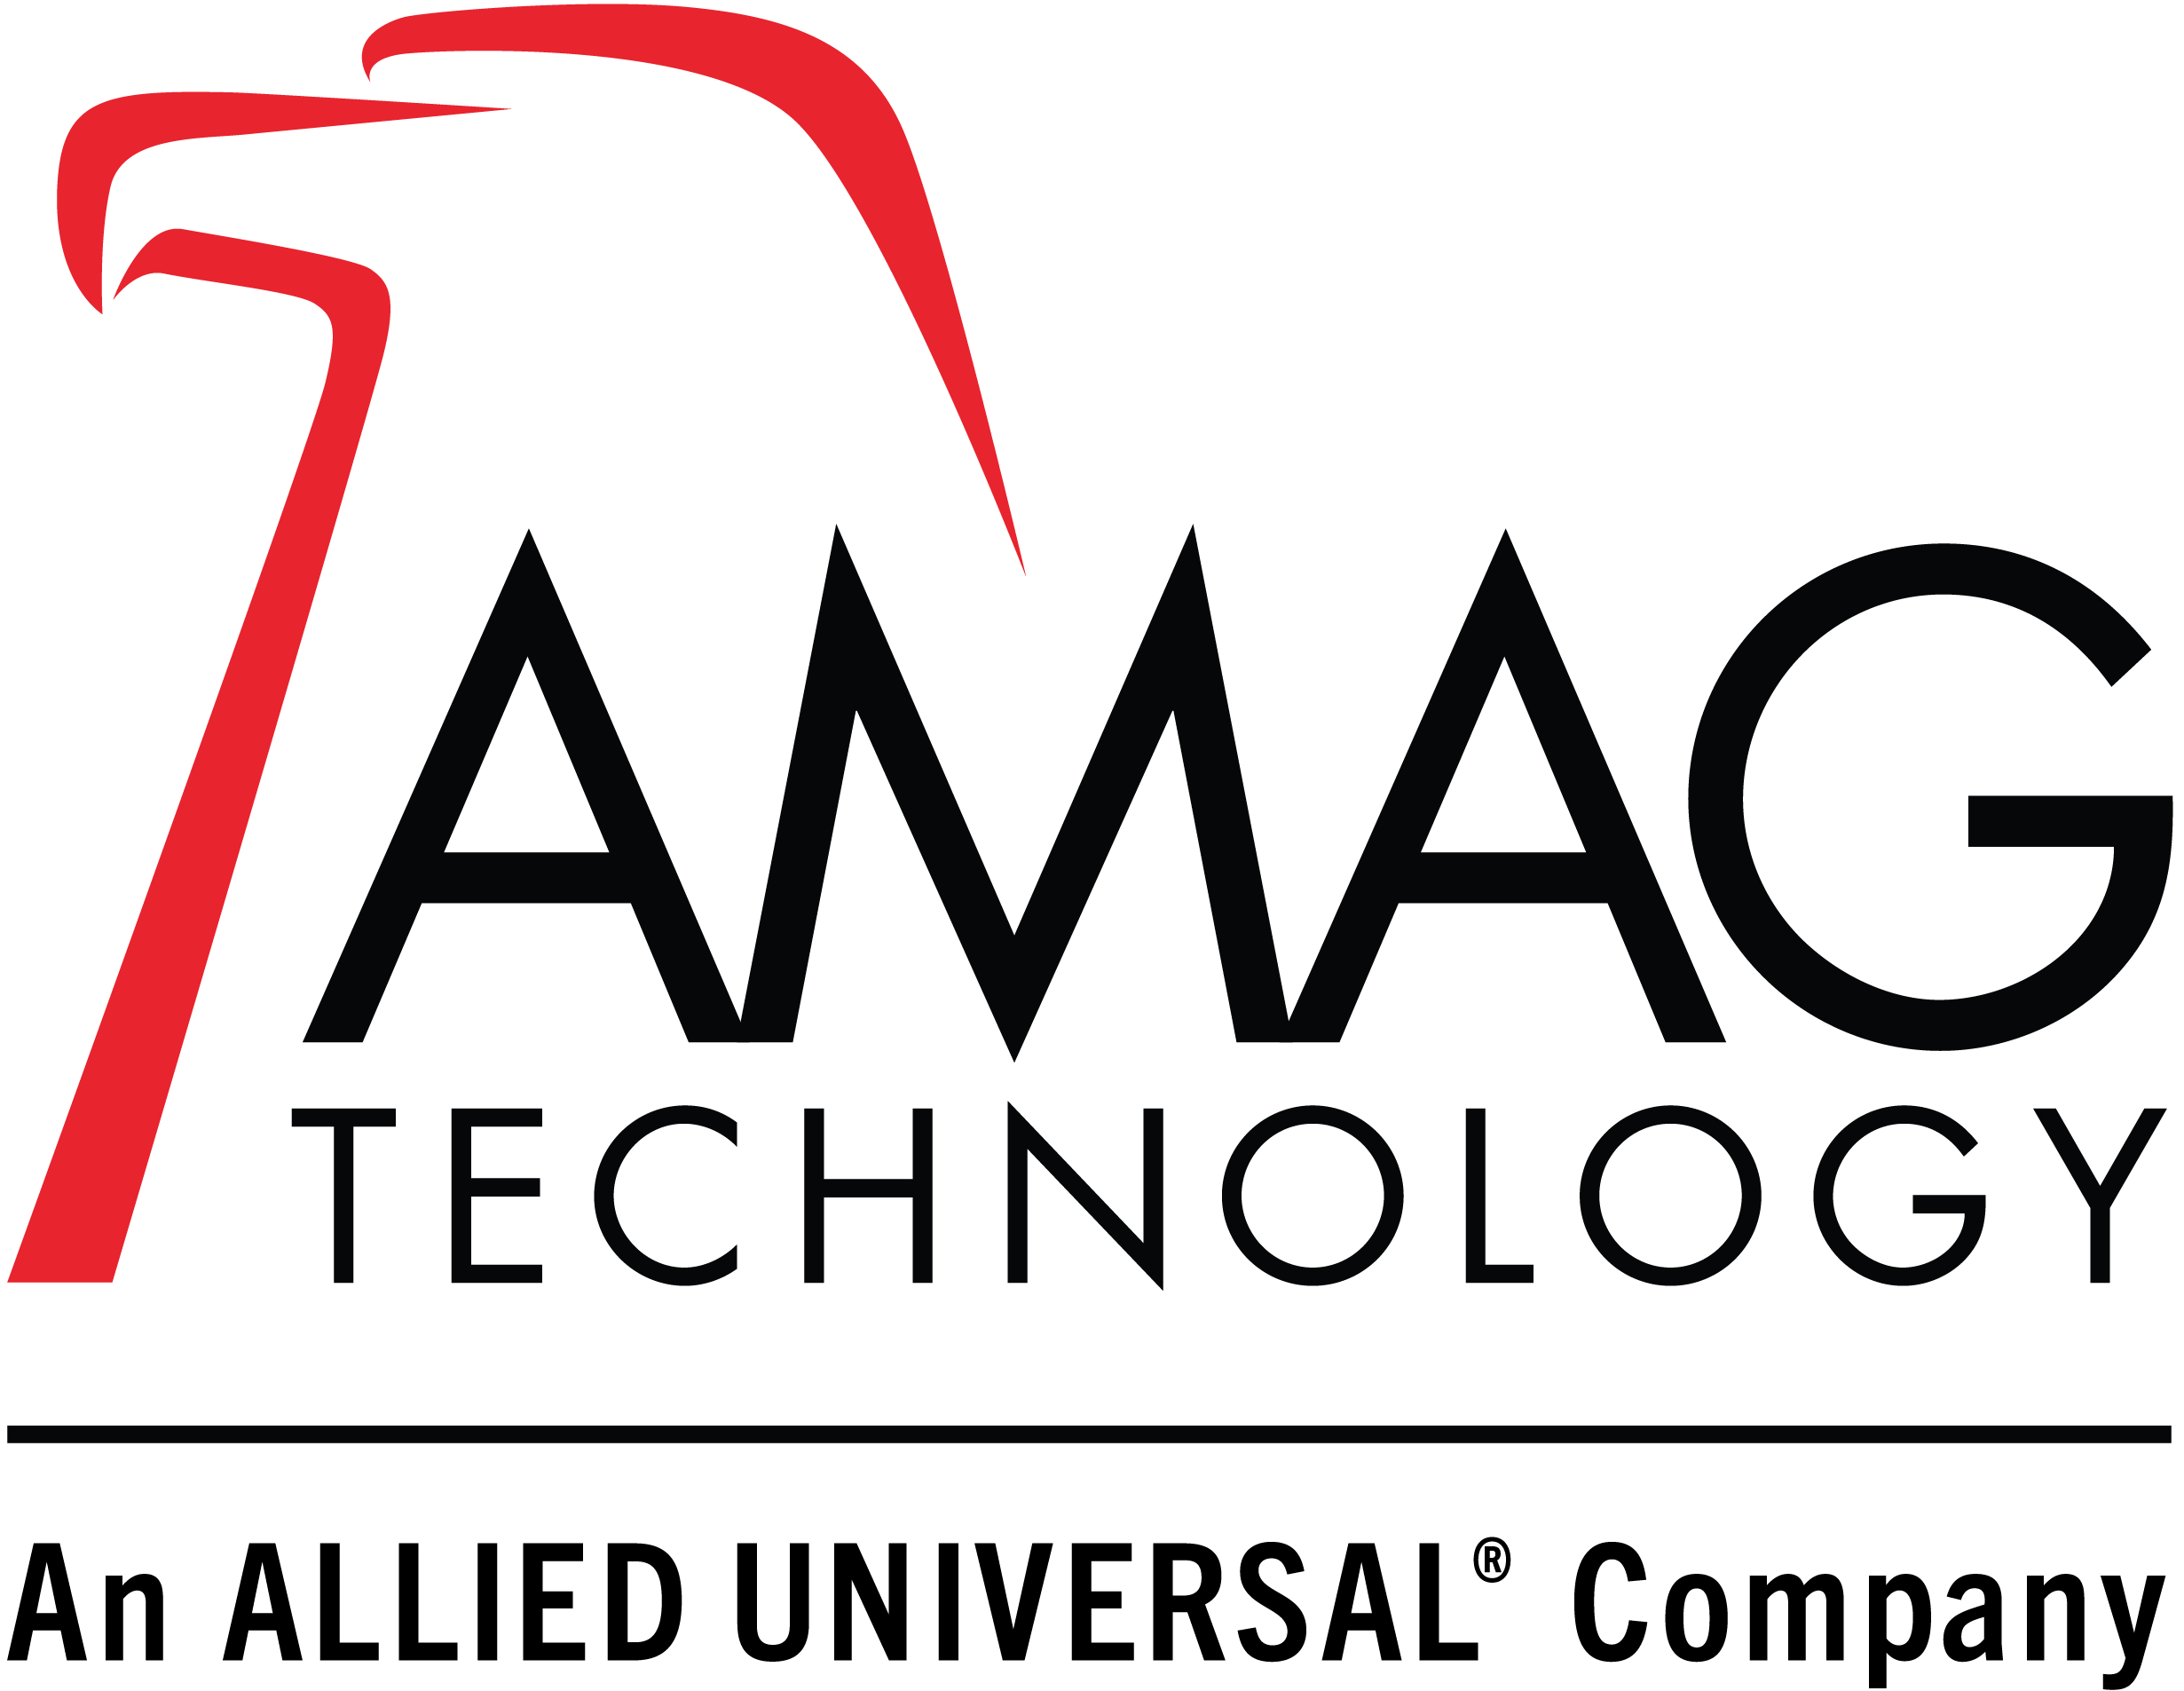 AMAG Technology, Inc.